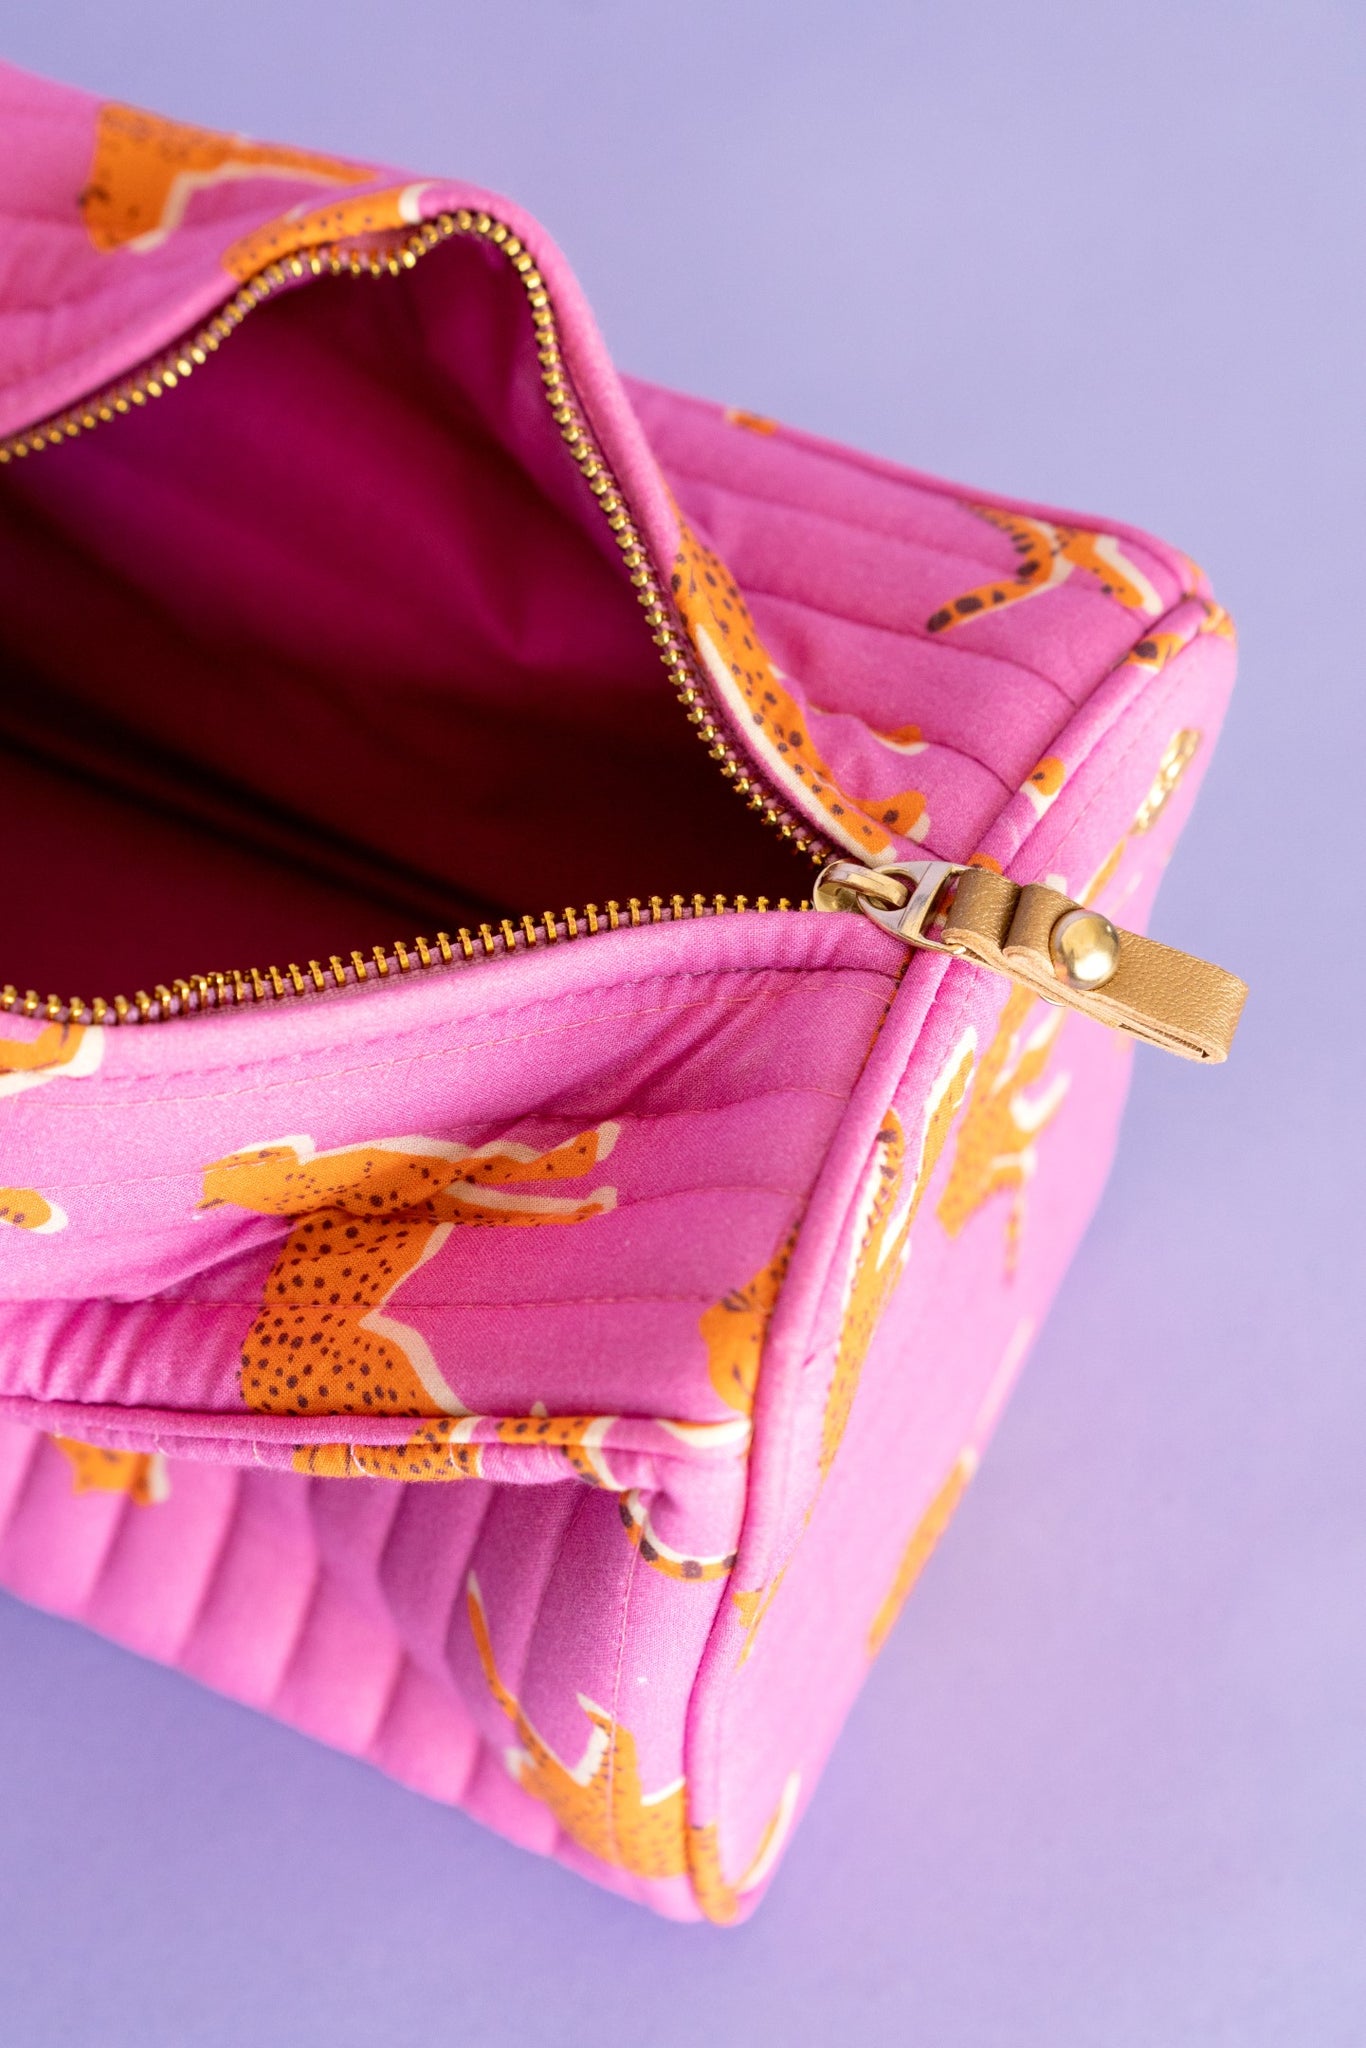 Cosmetic Bag in Pink Cheetah